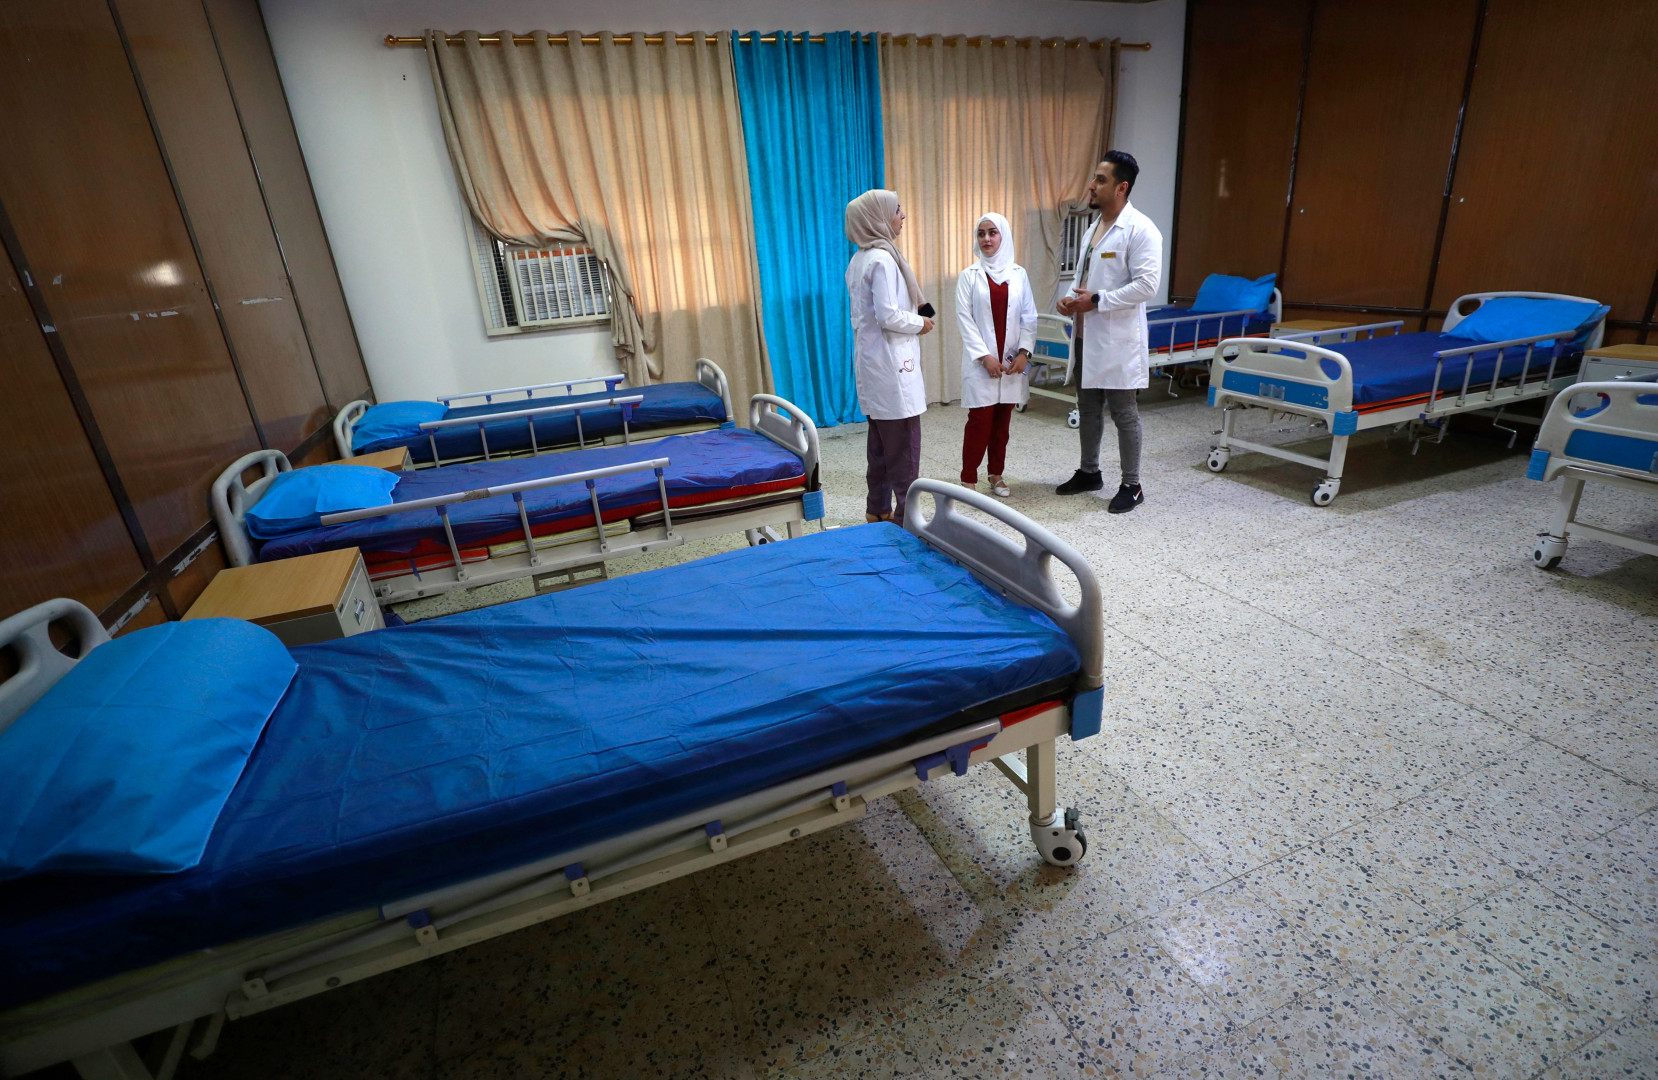 العراق في المرتبة الـ 79 عالمياً بين الدول الأفضل بأنظمة الرعاية الصحية